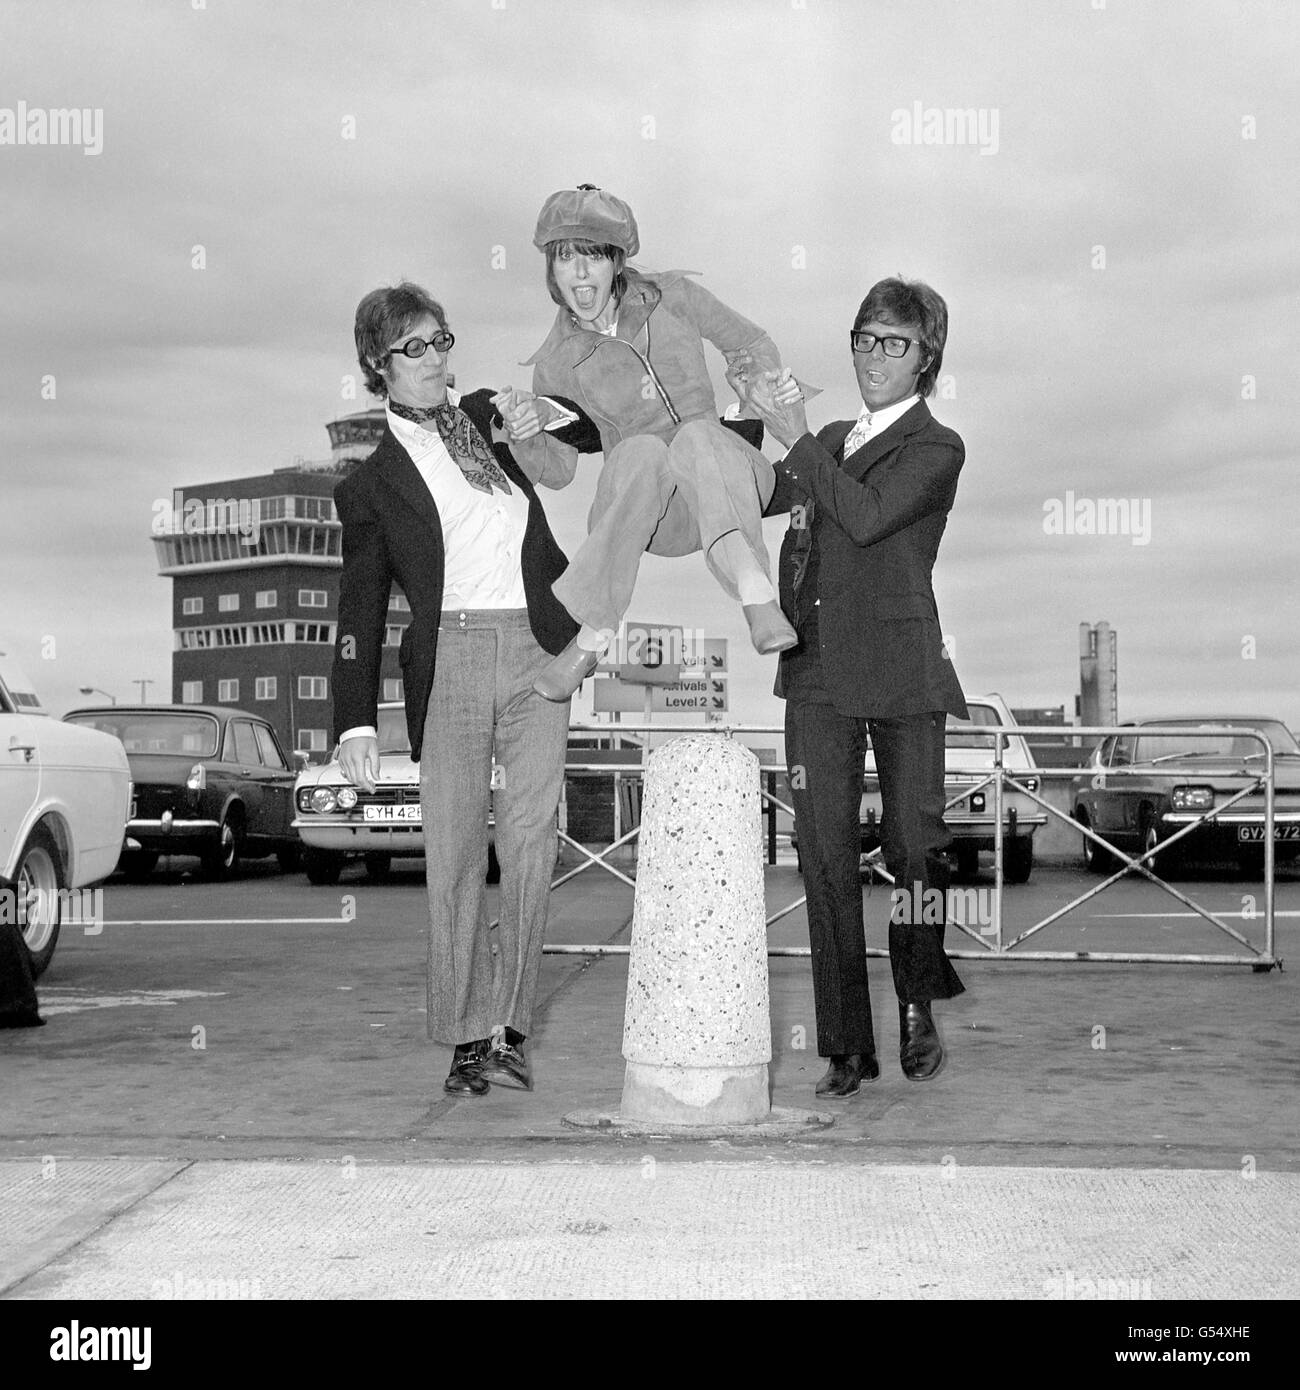 Unterhaltung - Una Stubbs, Cliff Richard und Hank Marvin - Heathrow Flughafen Stockfoto